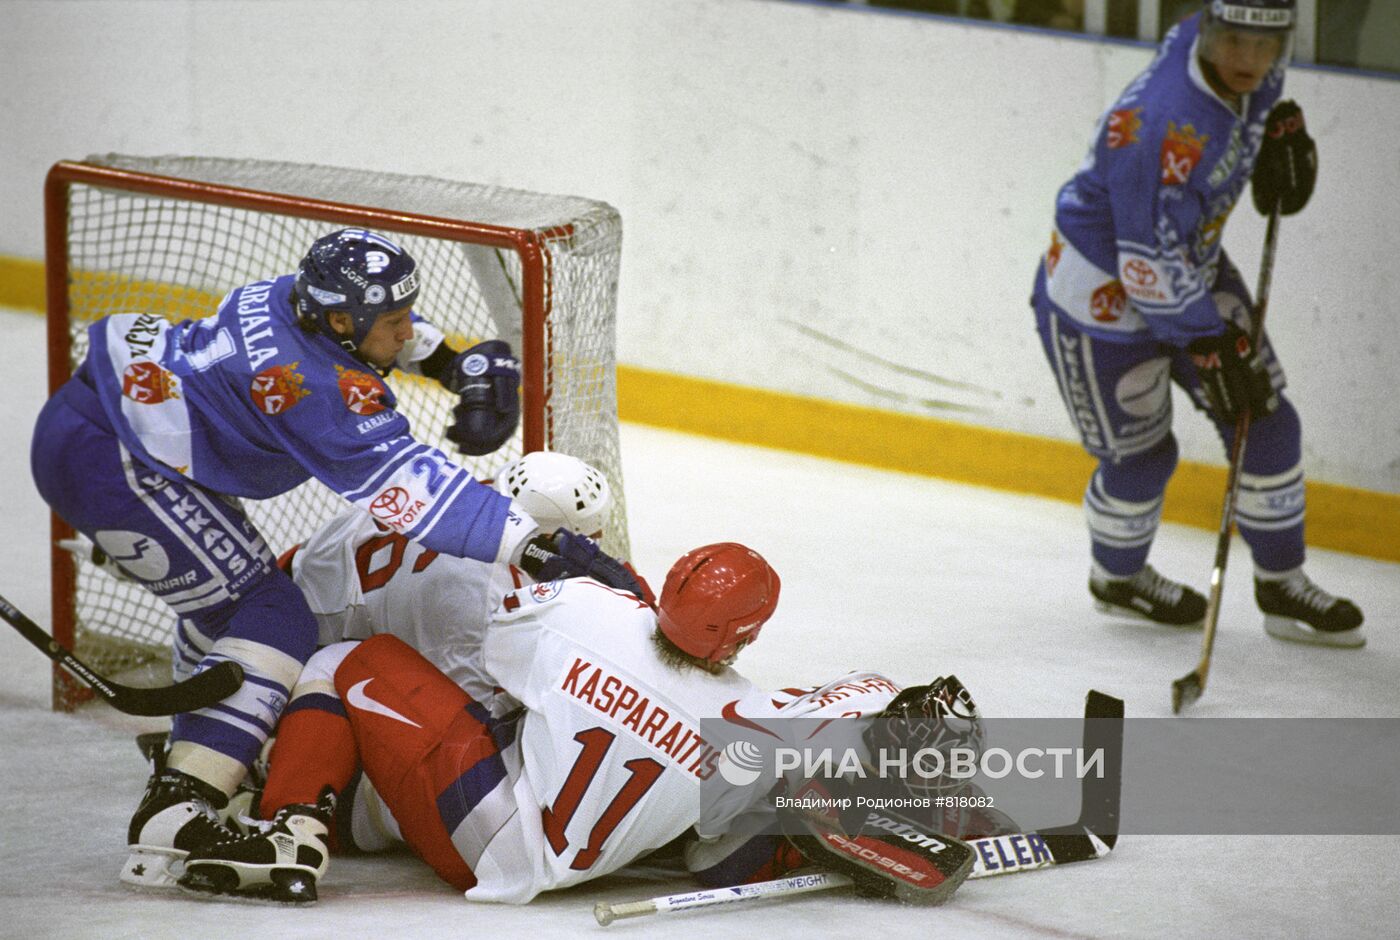 Товарищеский матч по хоккею между сборными России и Финляндии